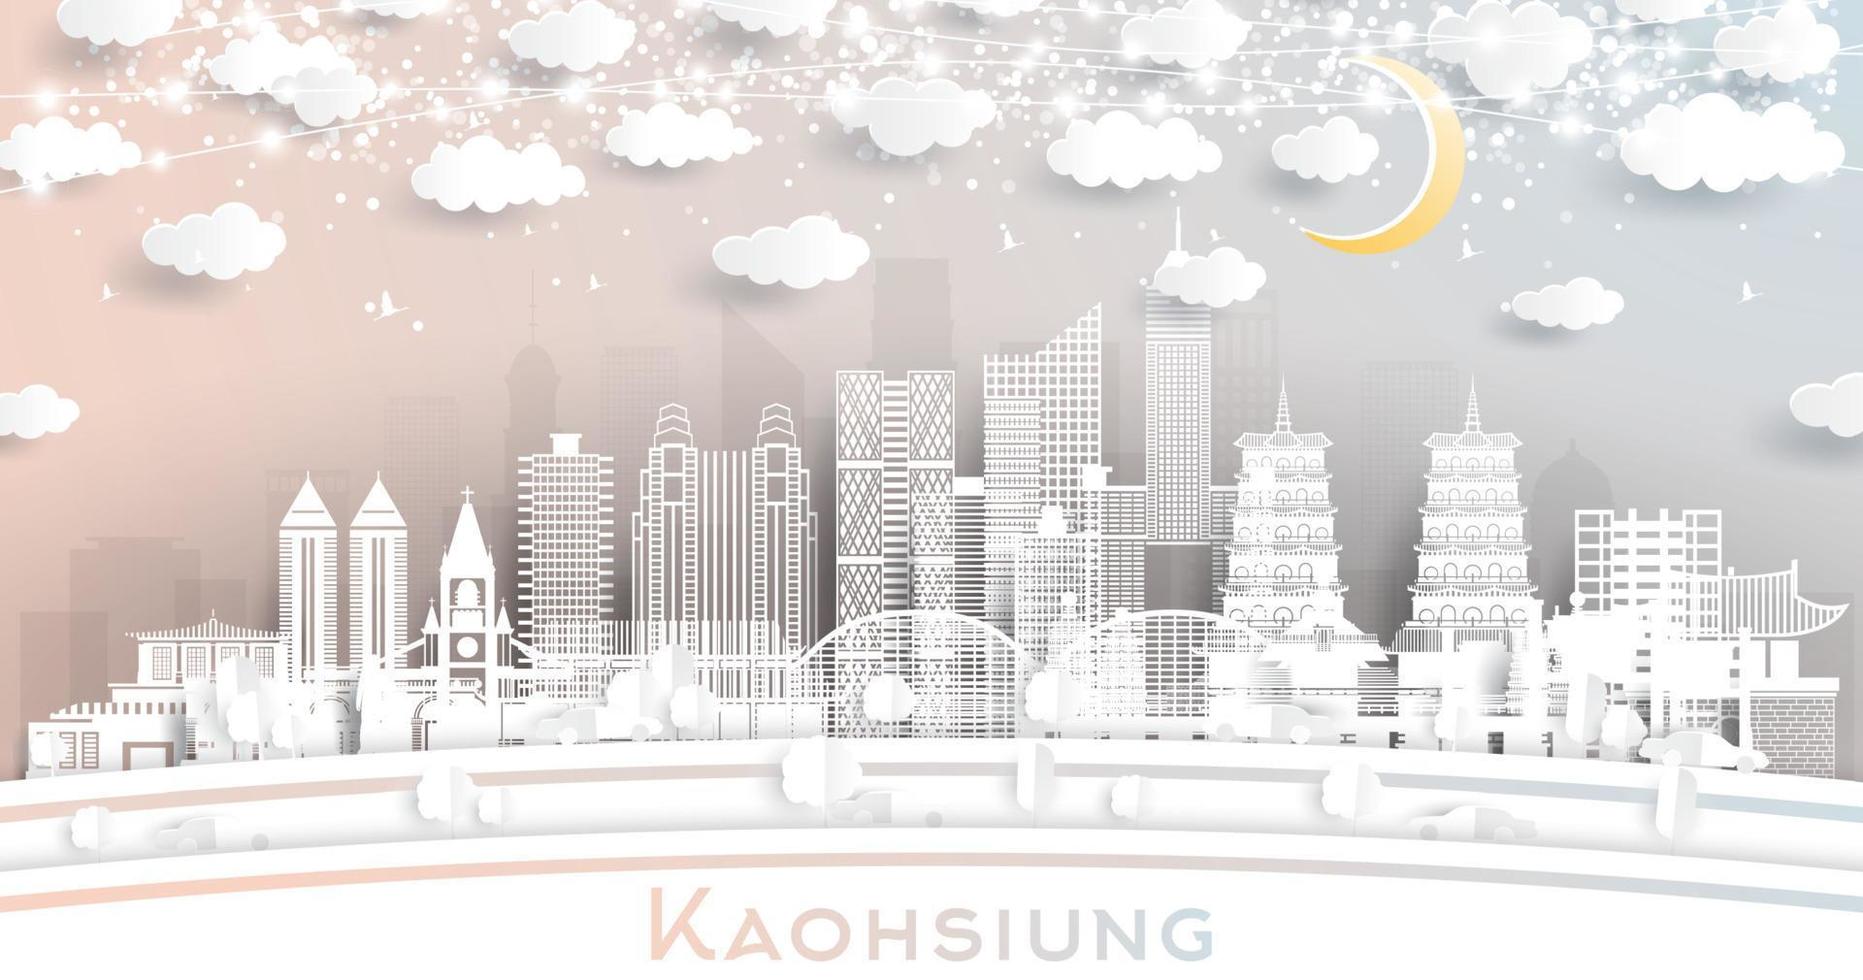 kaohsiung Taiwan stad horizon in papier besnoeiing stijl met wit gebouwen, maan en neon guirlande. vector